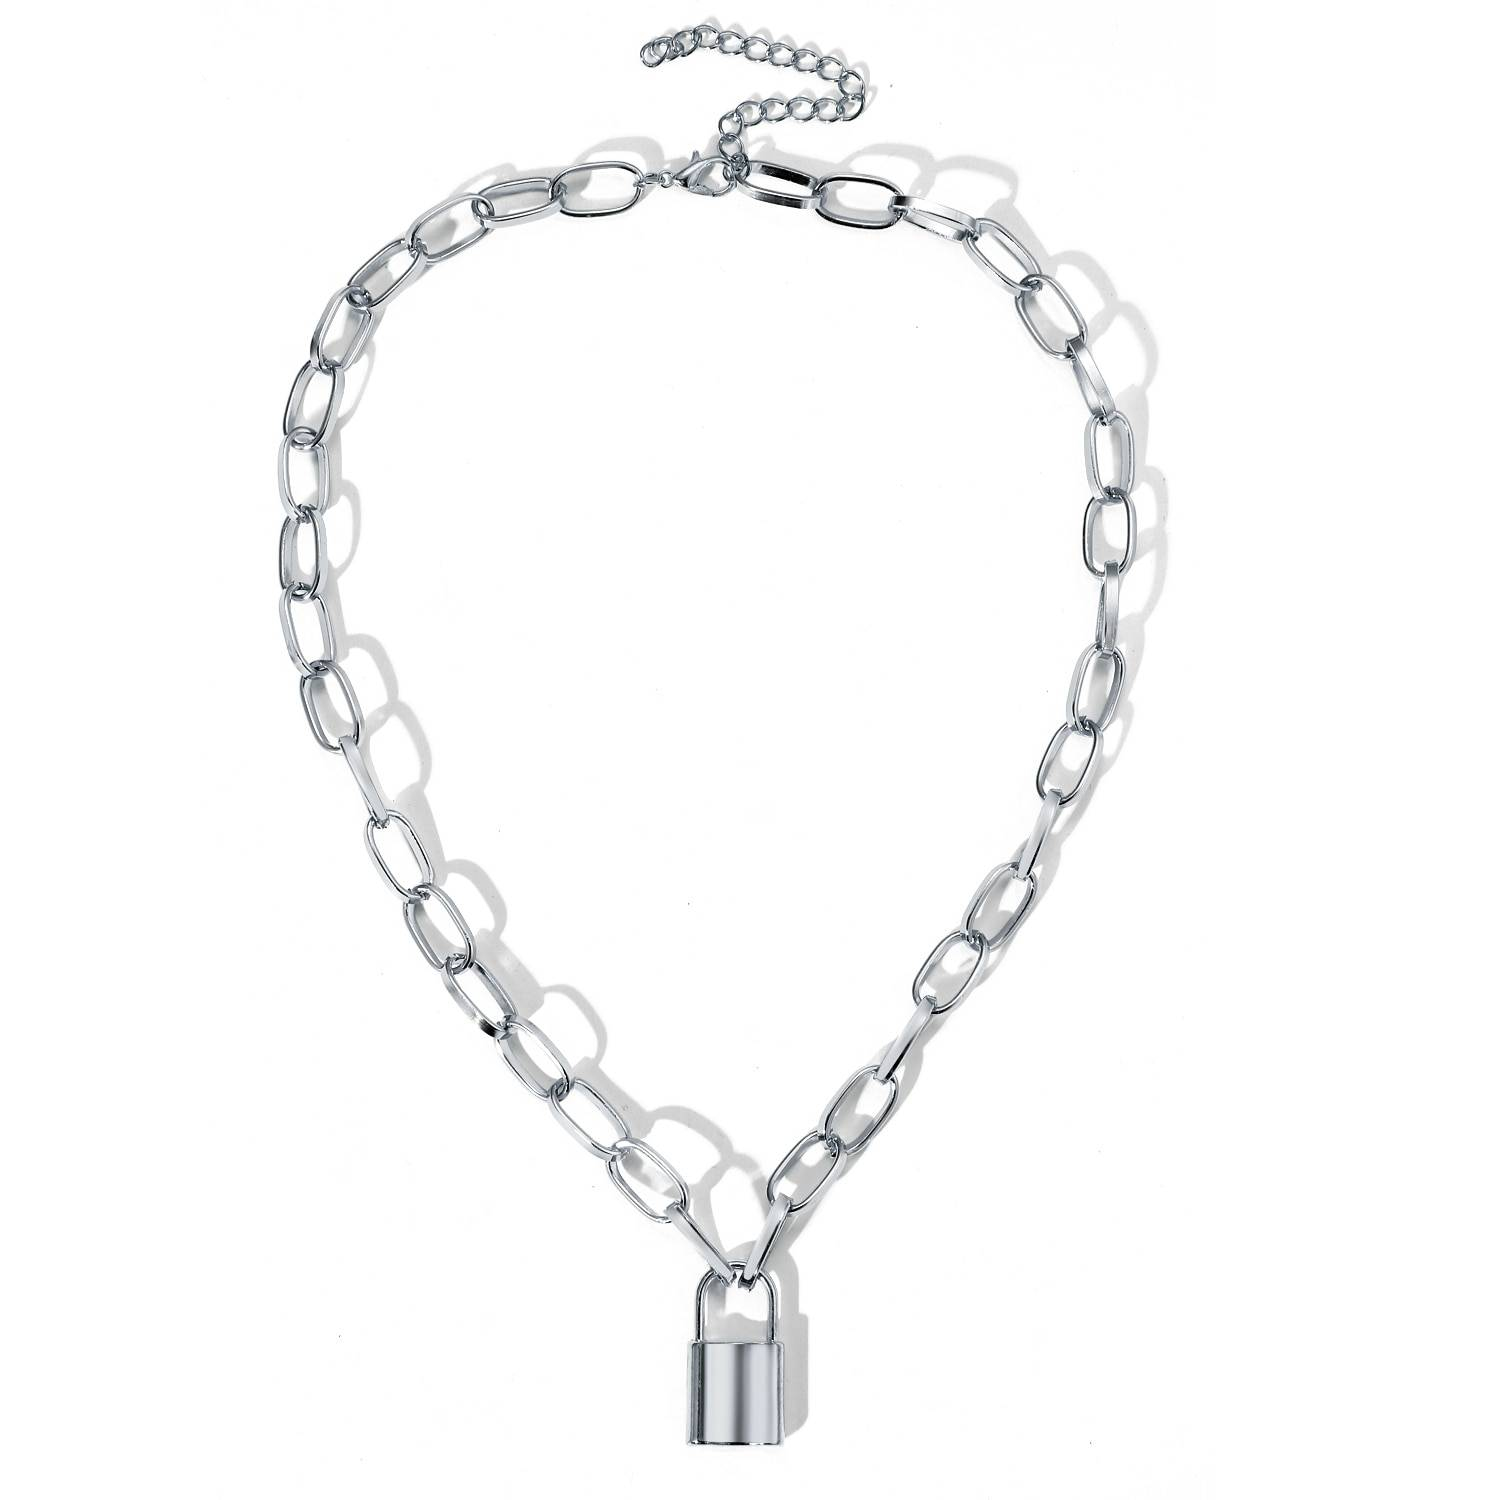 Rock collier ras du cou serrure chaîne en couches sur le cou avec serrure Punk bijoux Mujer clé cadenas pendentif collier pour les femmes cadeau